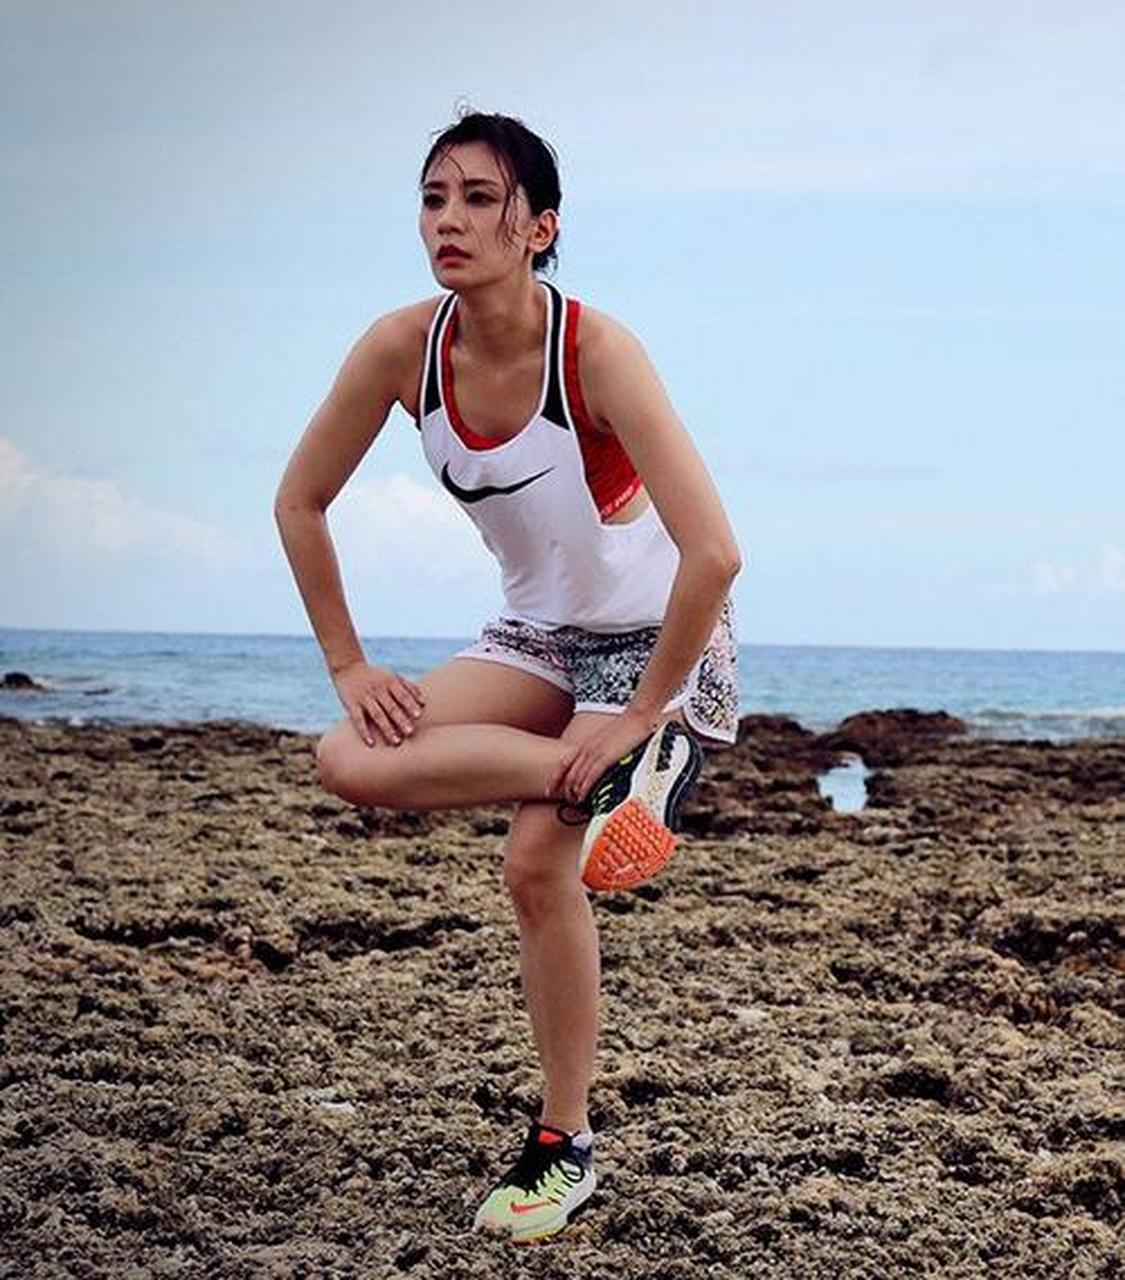 贾静雯是一个出入健身房频率超高的女星之一,爱运动的女生最美呀!